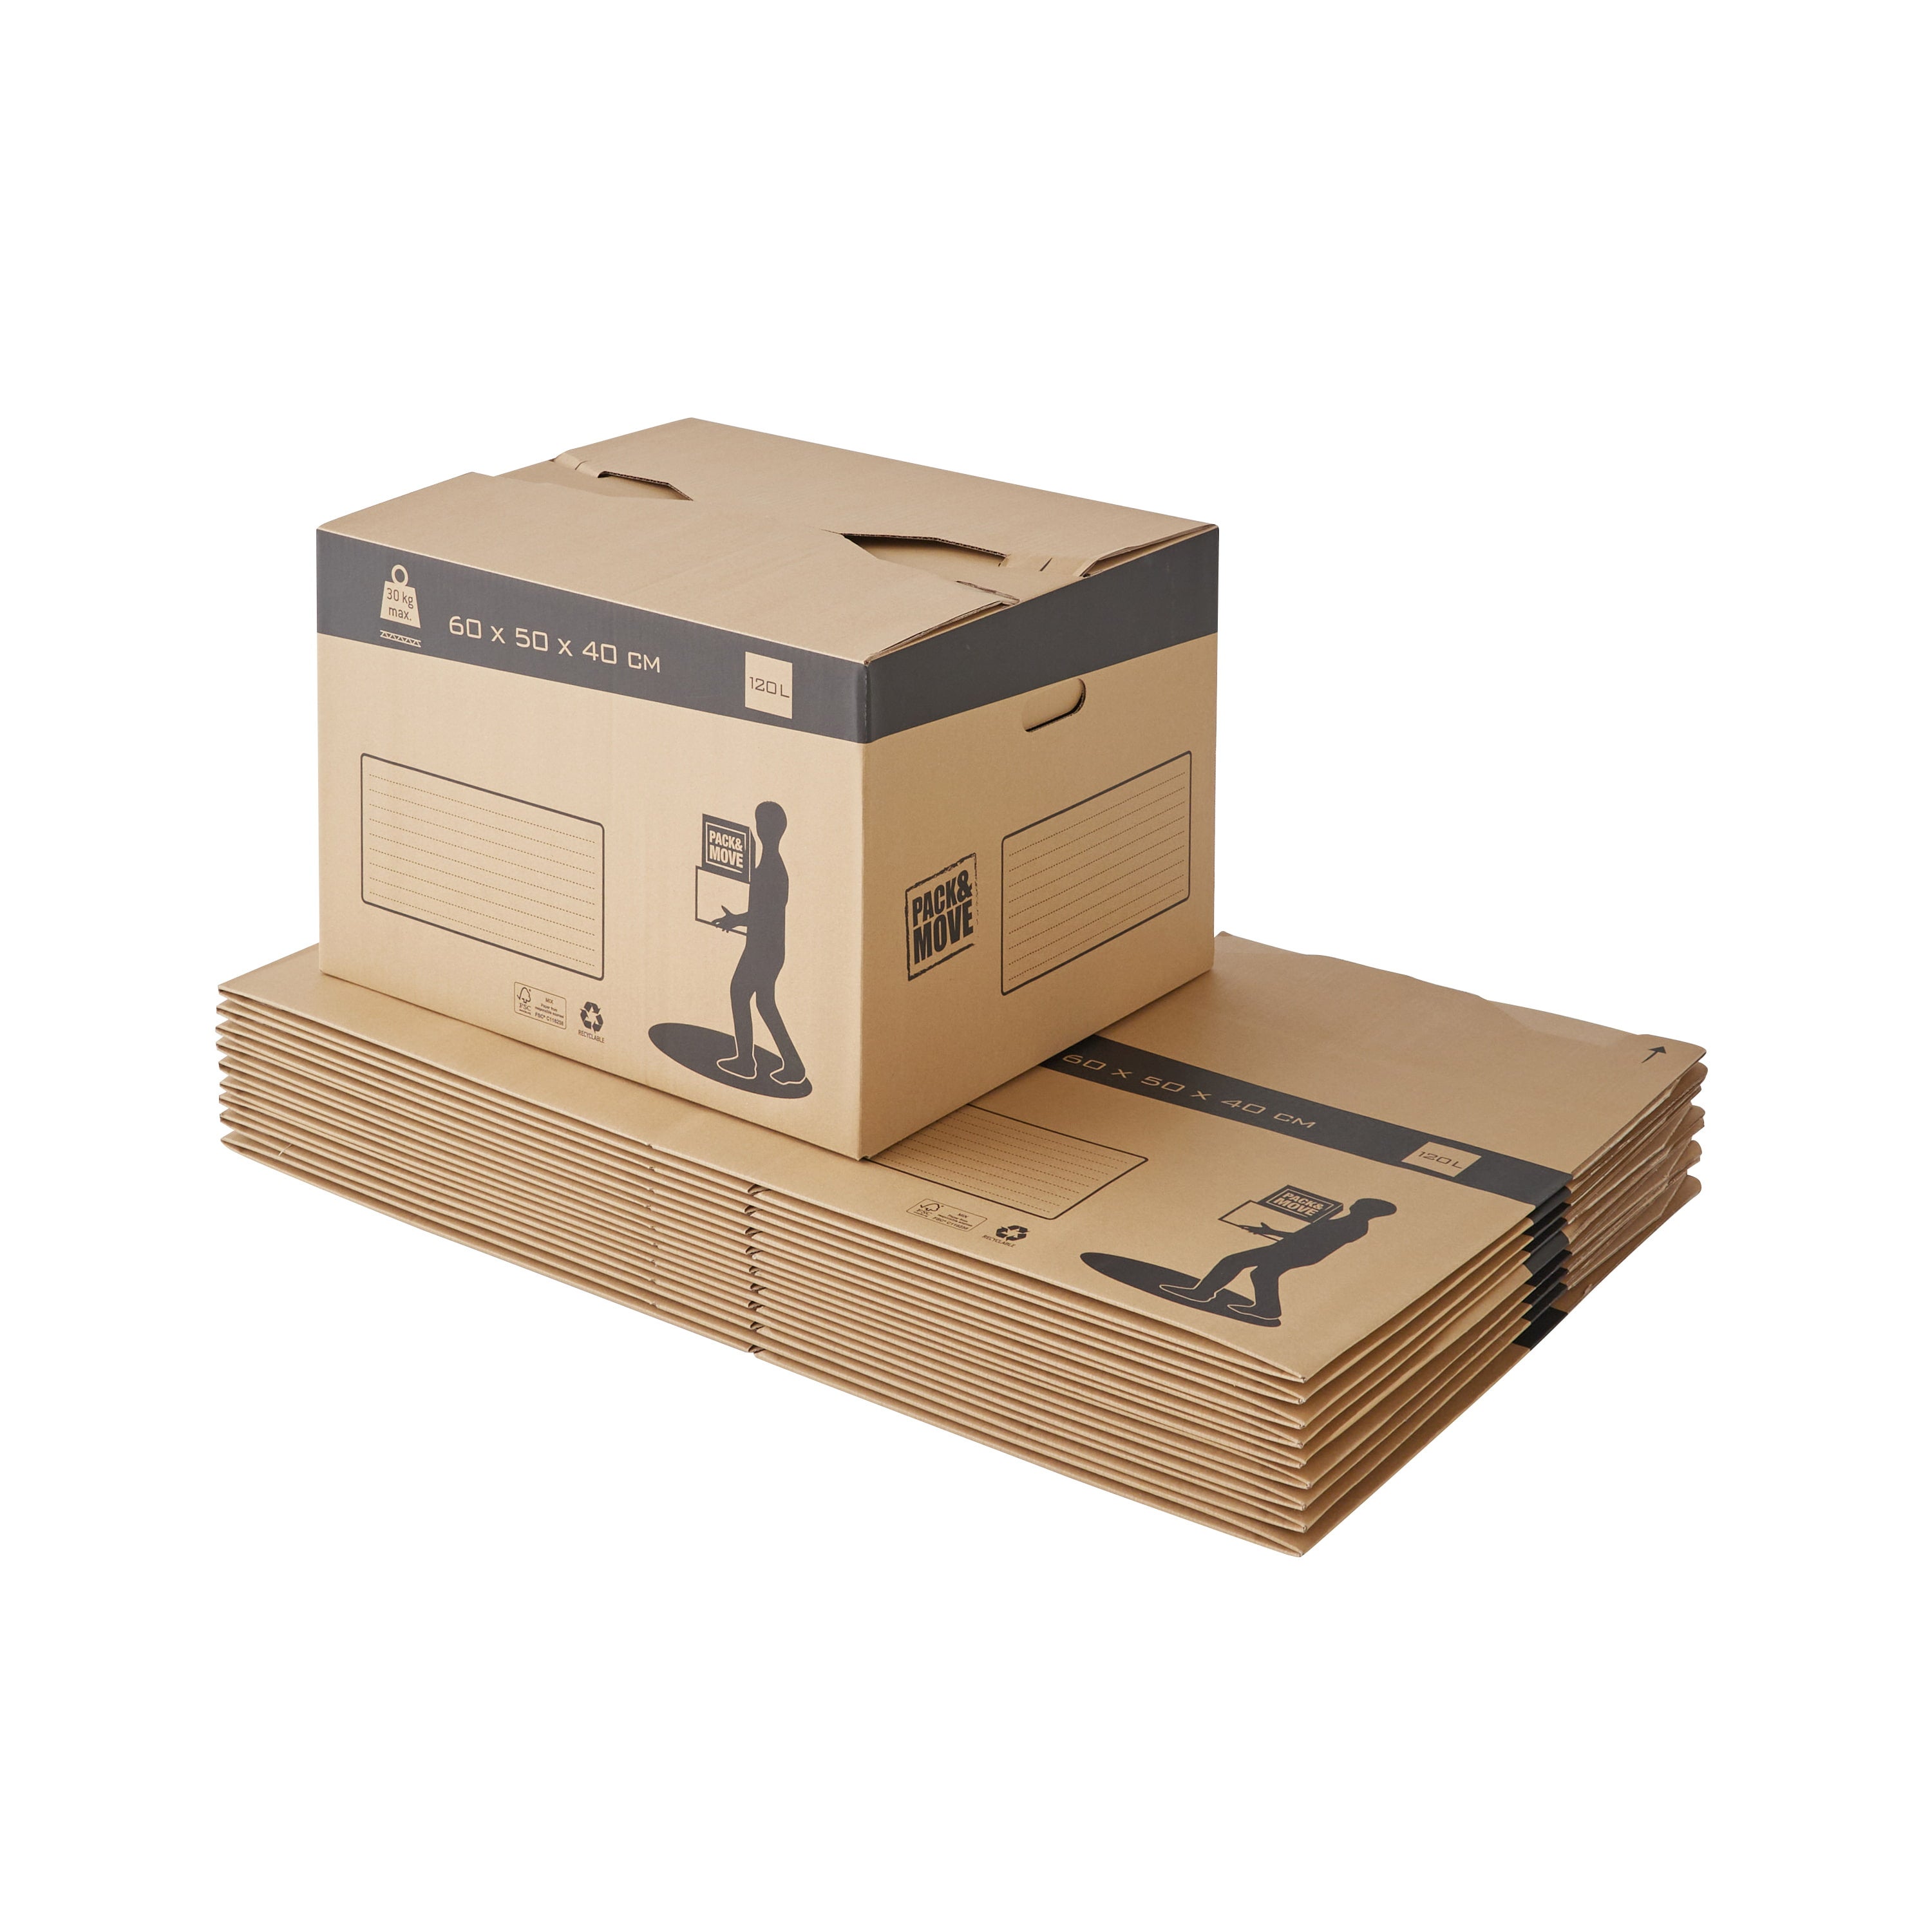 El precio de las cajas para mudanzas - Cajas Cartón Barcelona